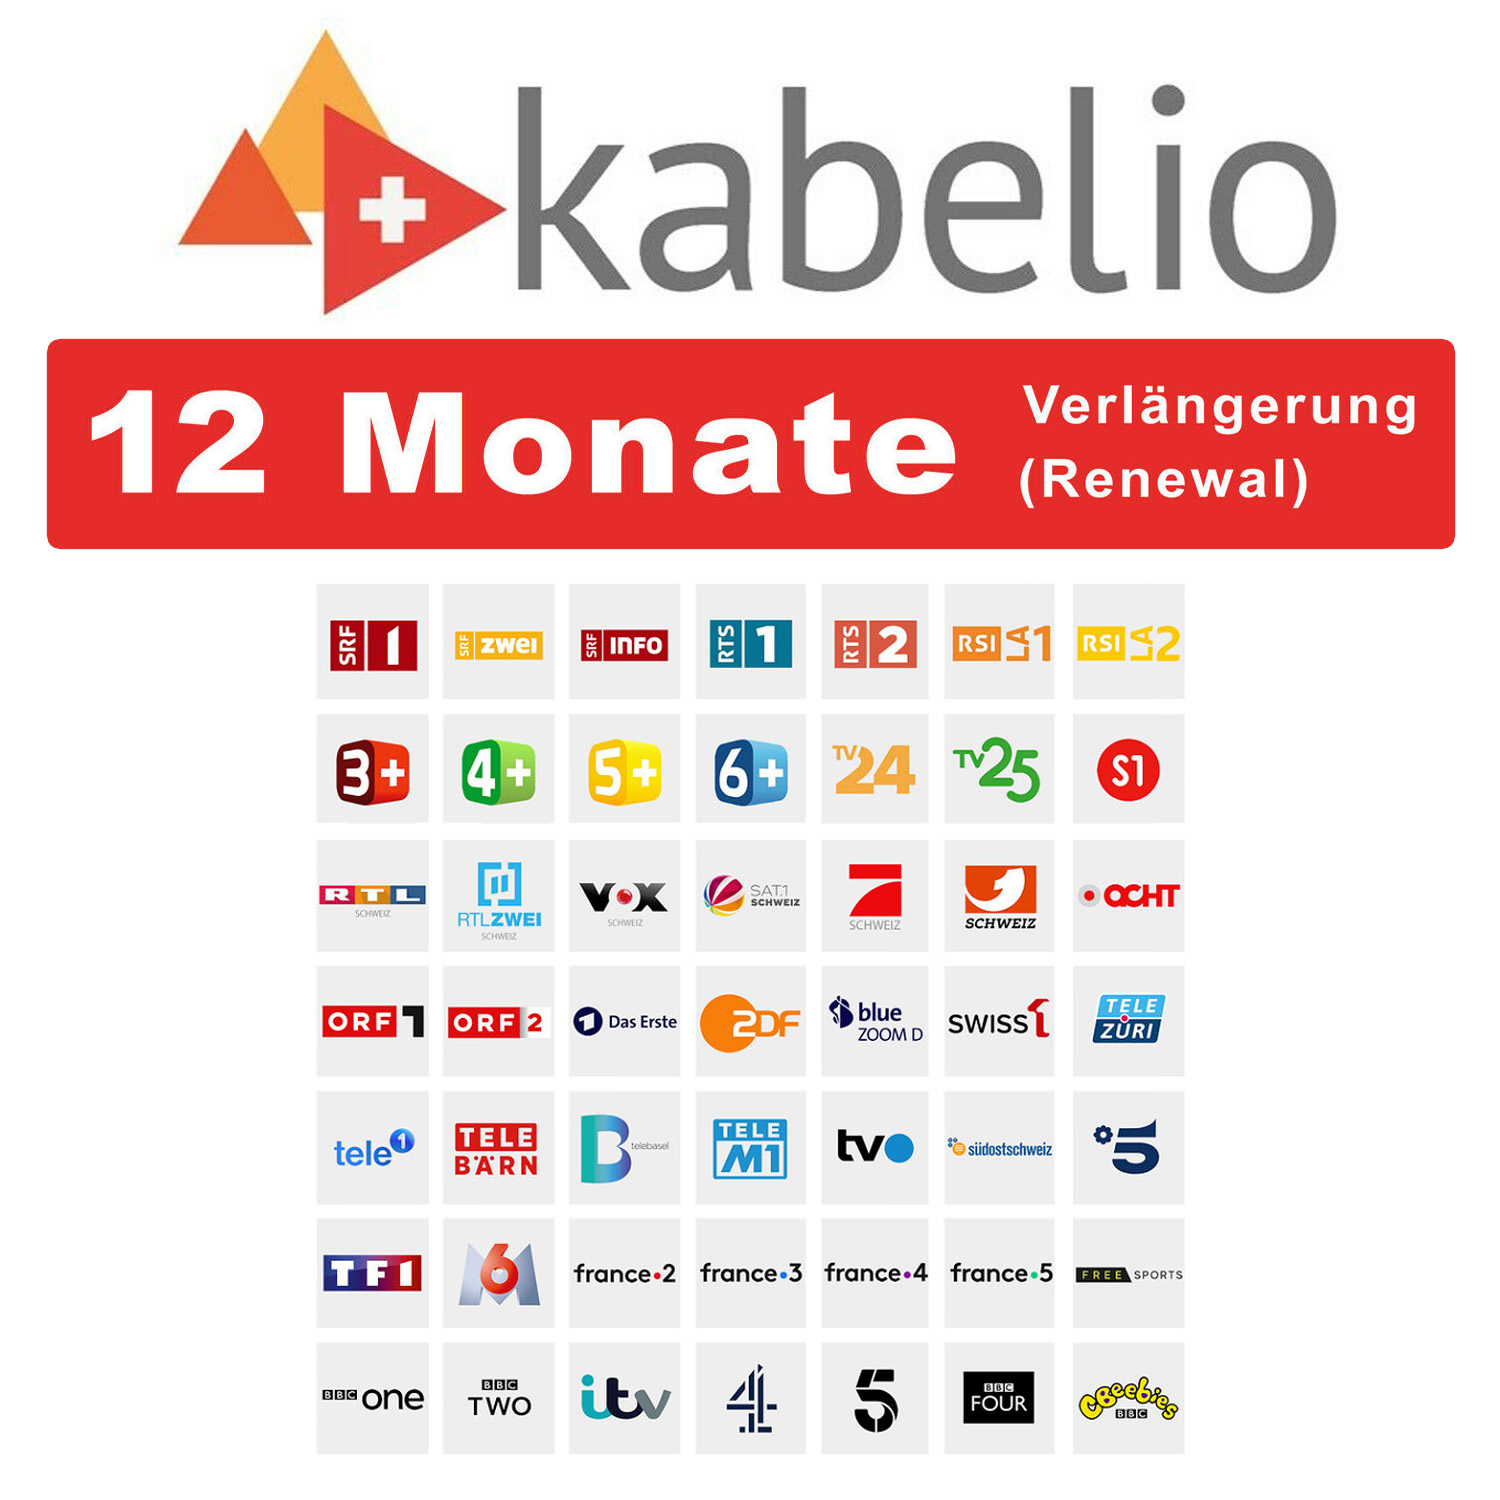 Kabelio Verlängerung Renewal 12 Monate